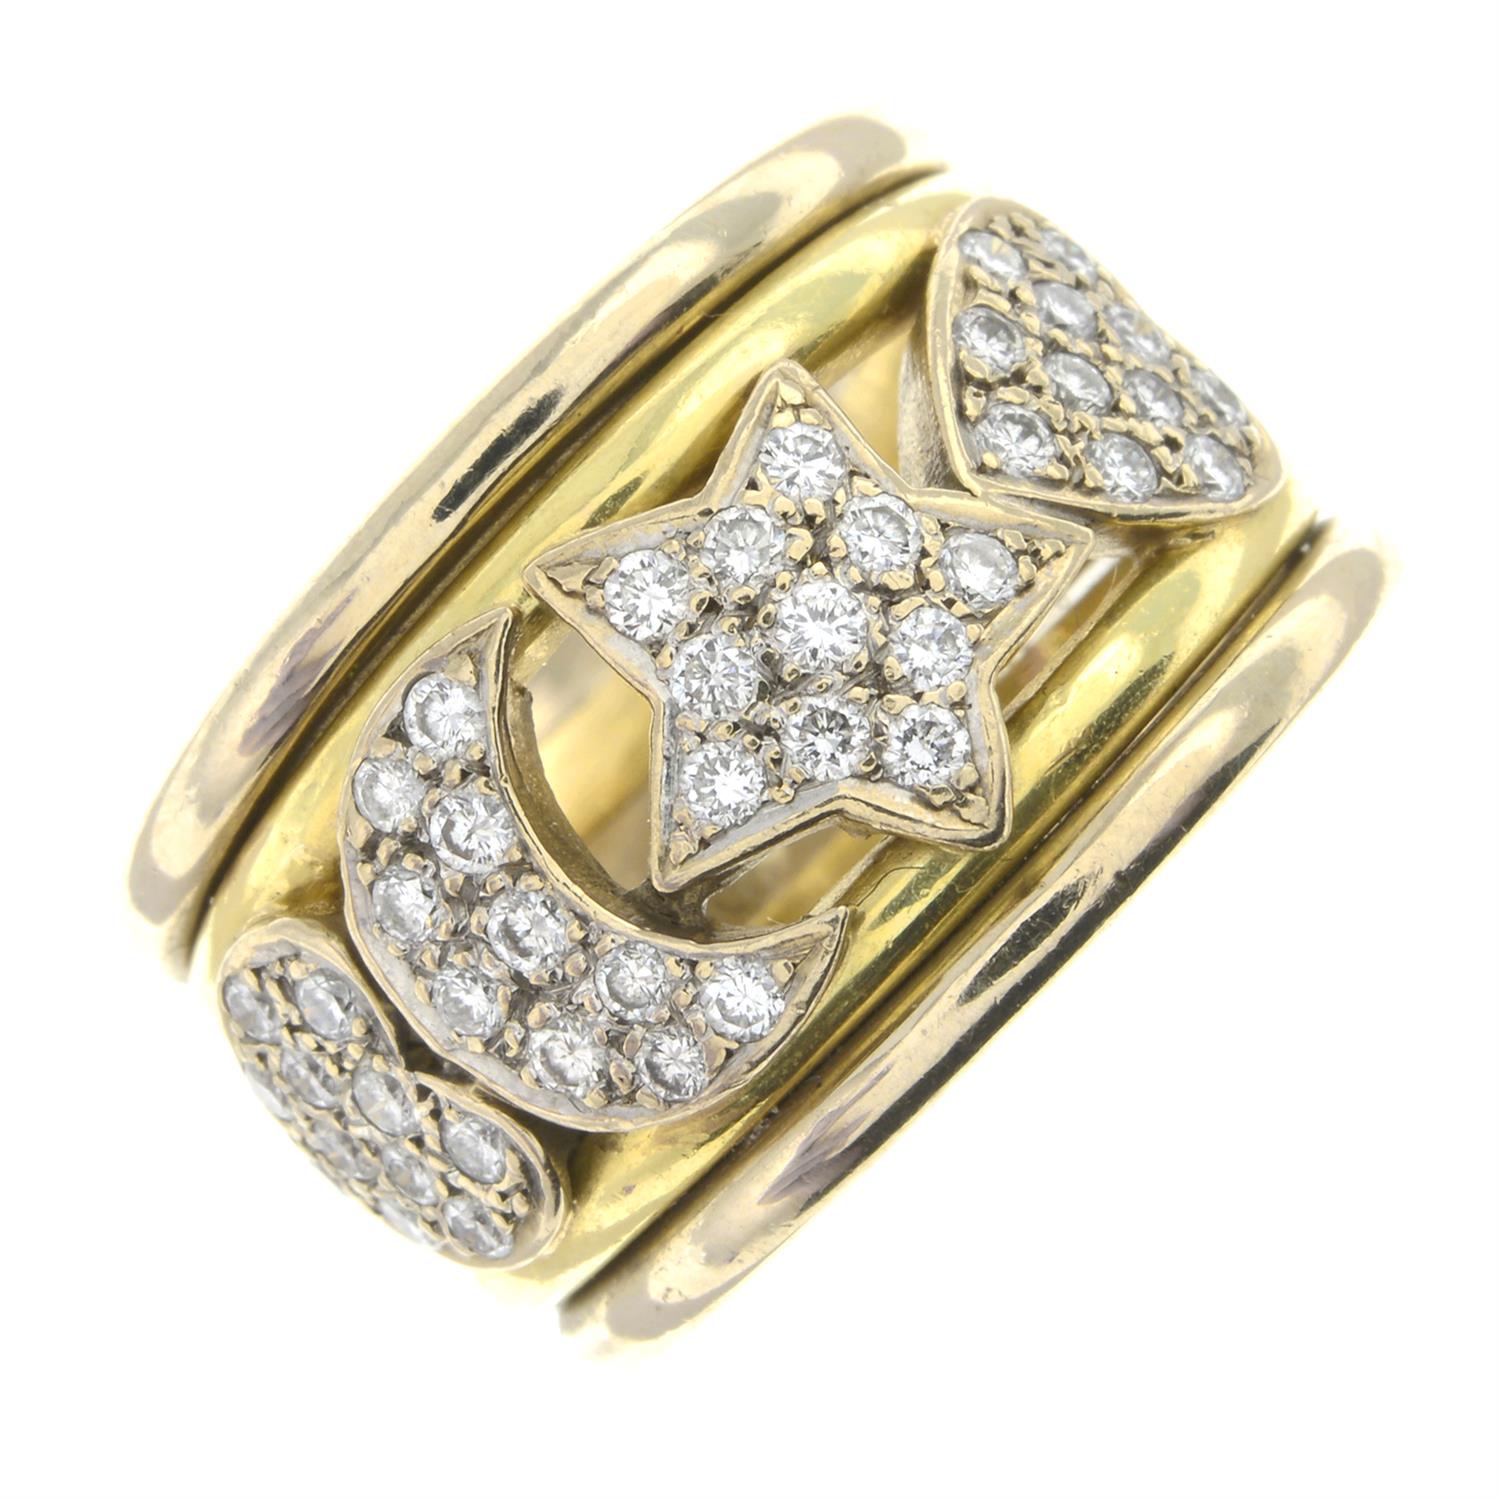 Diamond stylised band ring